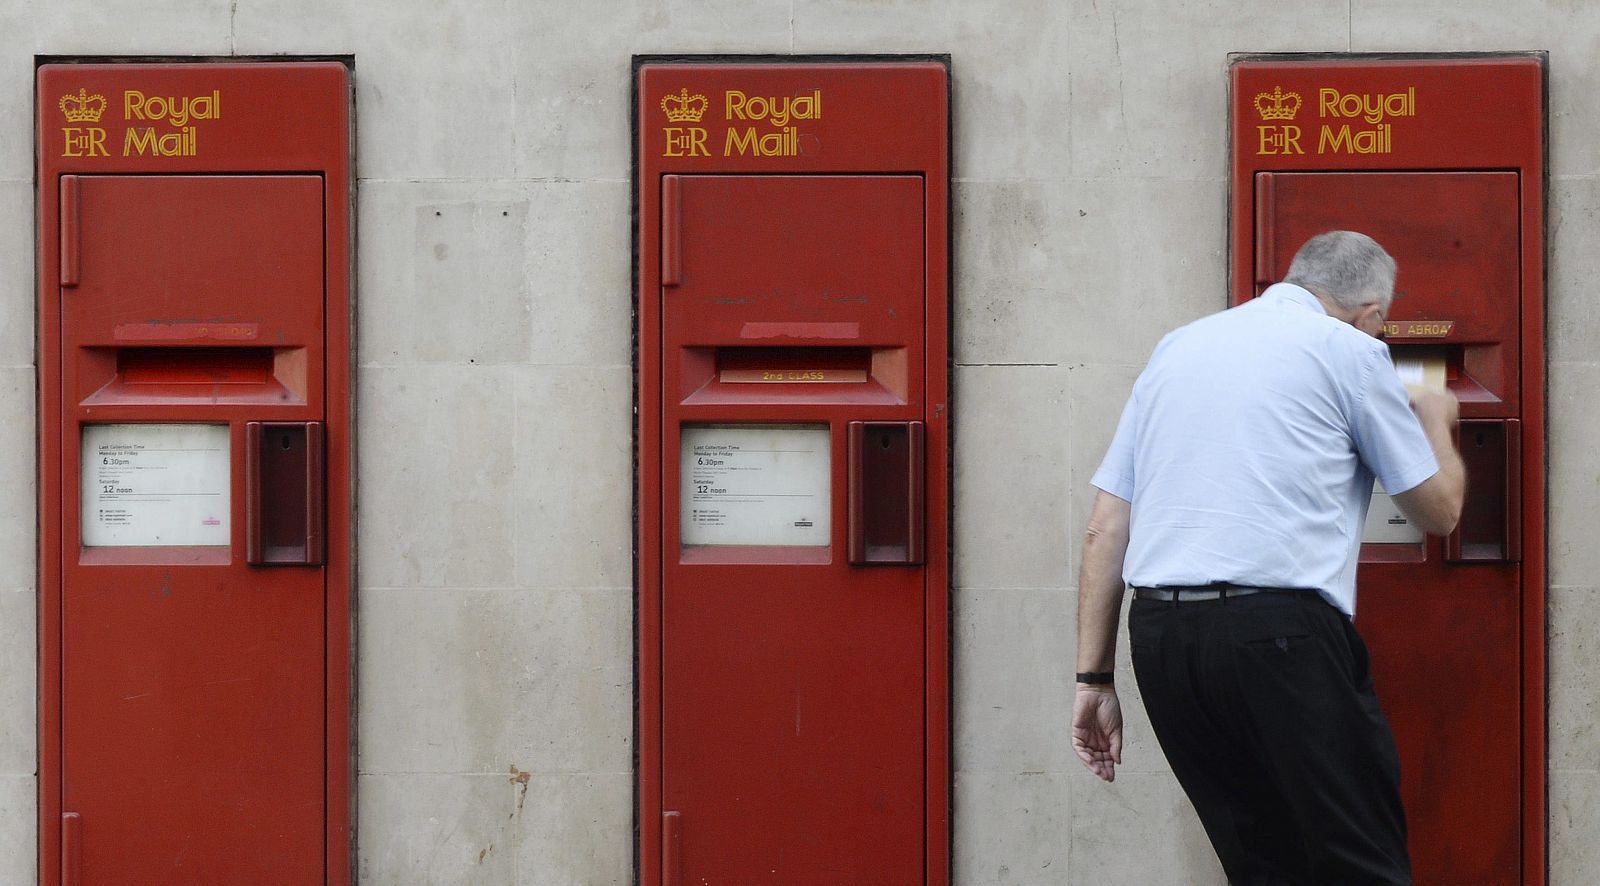 Un hombre echa una carta en un buzón de correos de una oficina del servicio Royal Mail, en Londres